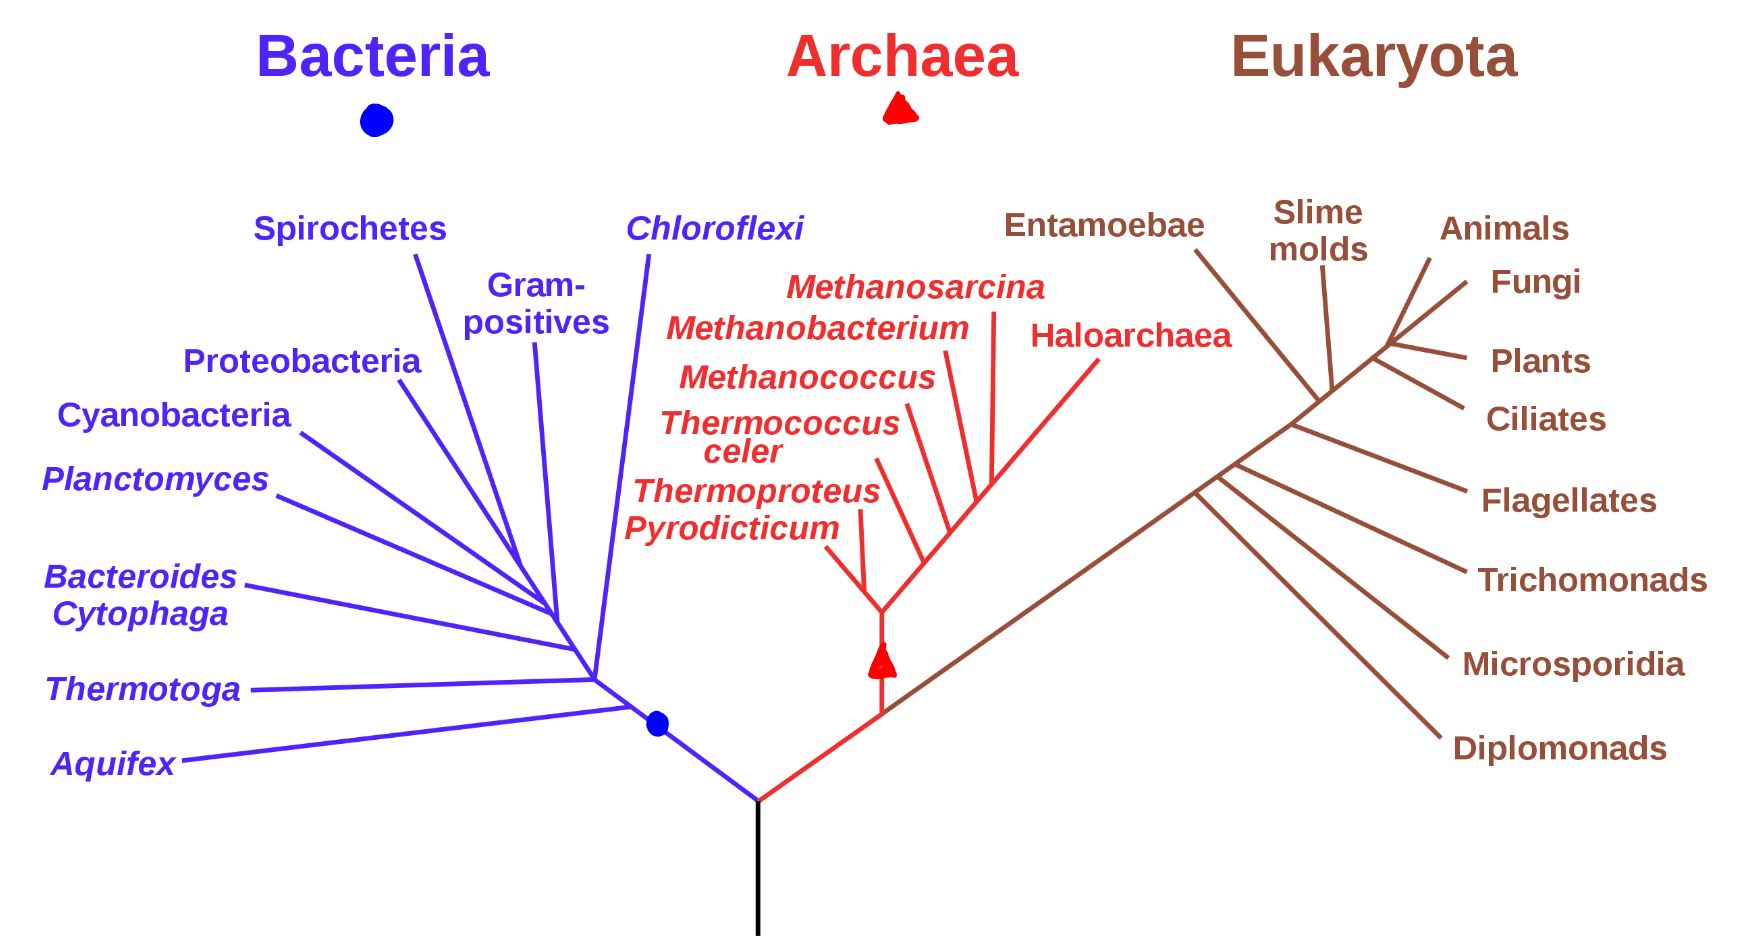 Un diagrama de árbol ramificado que representa las relaciones entre tres dominios de organismos vivos: Bacterias, Archaea y Eucariontes